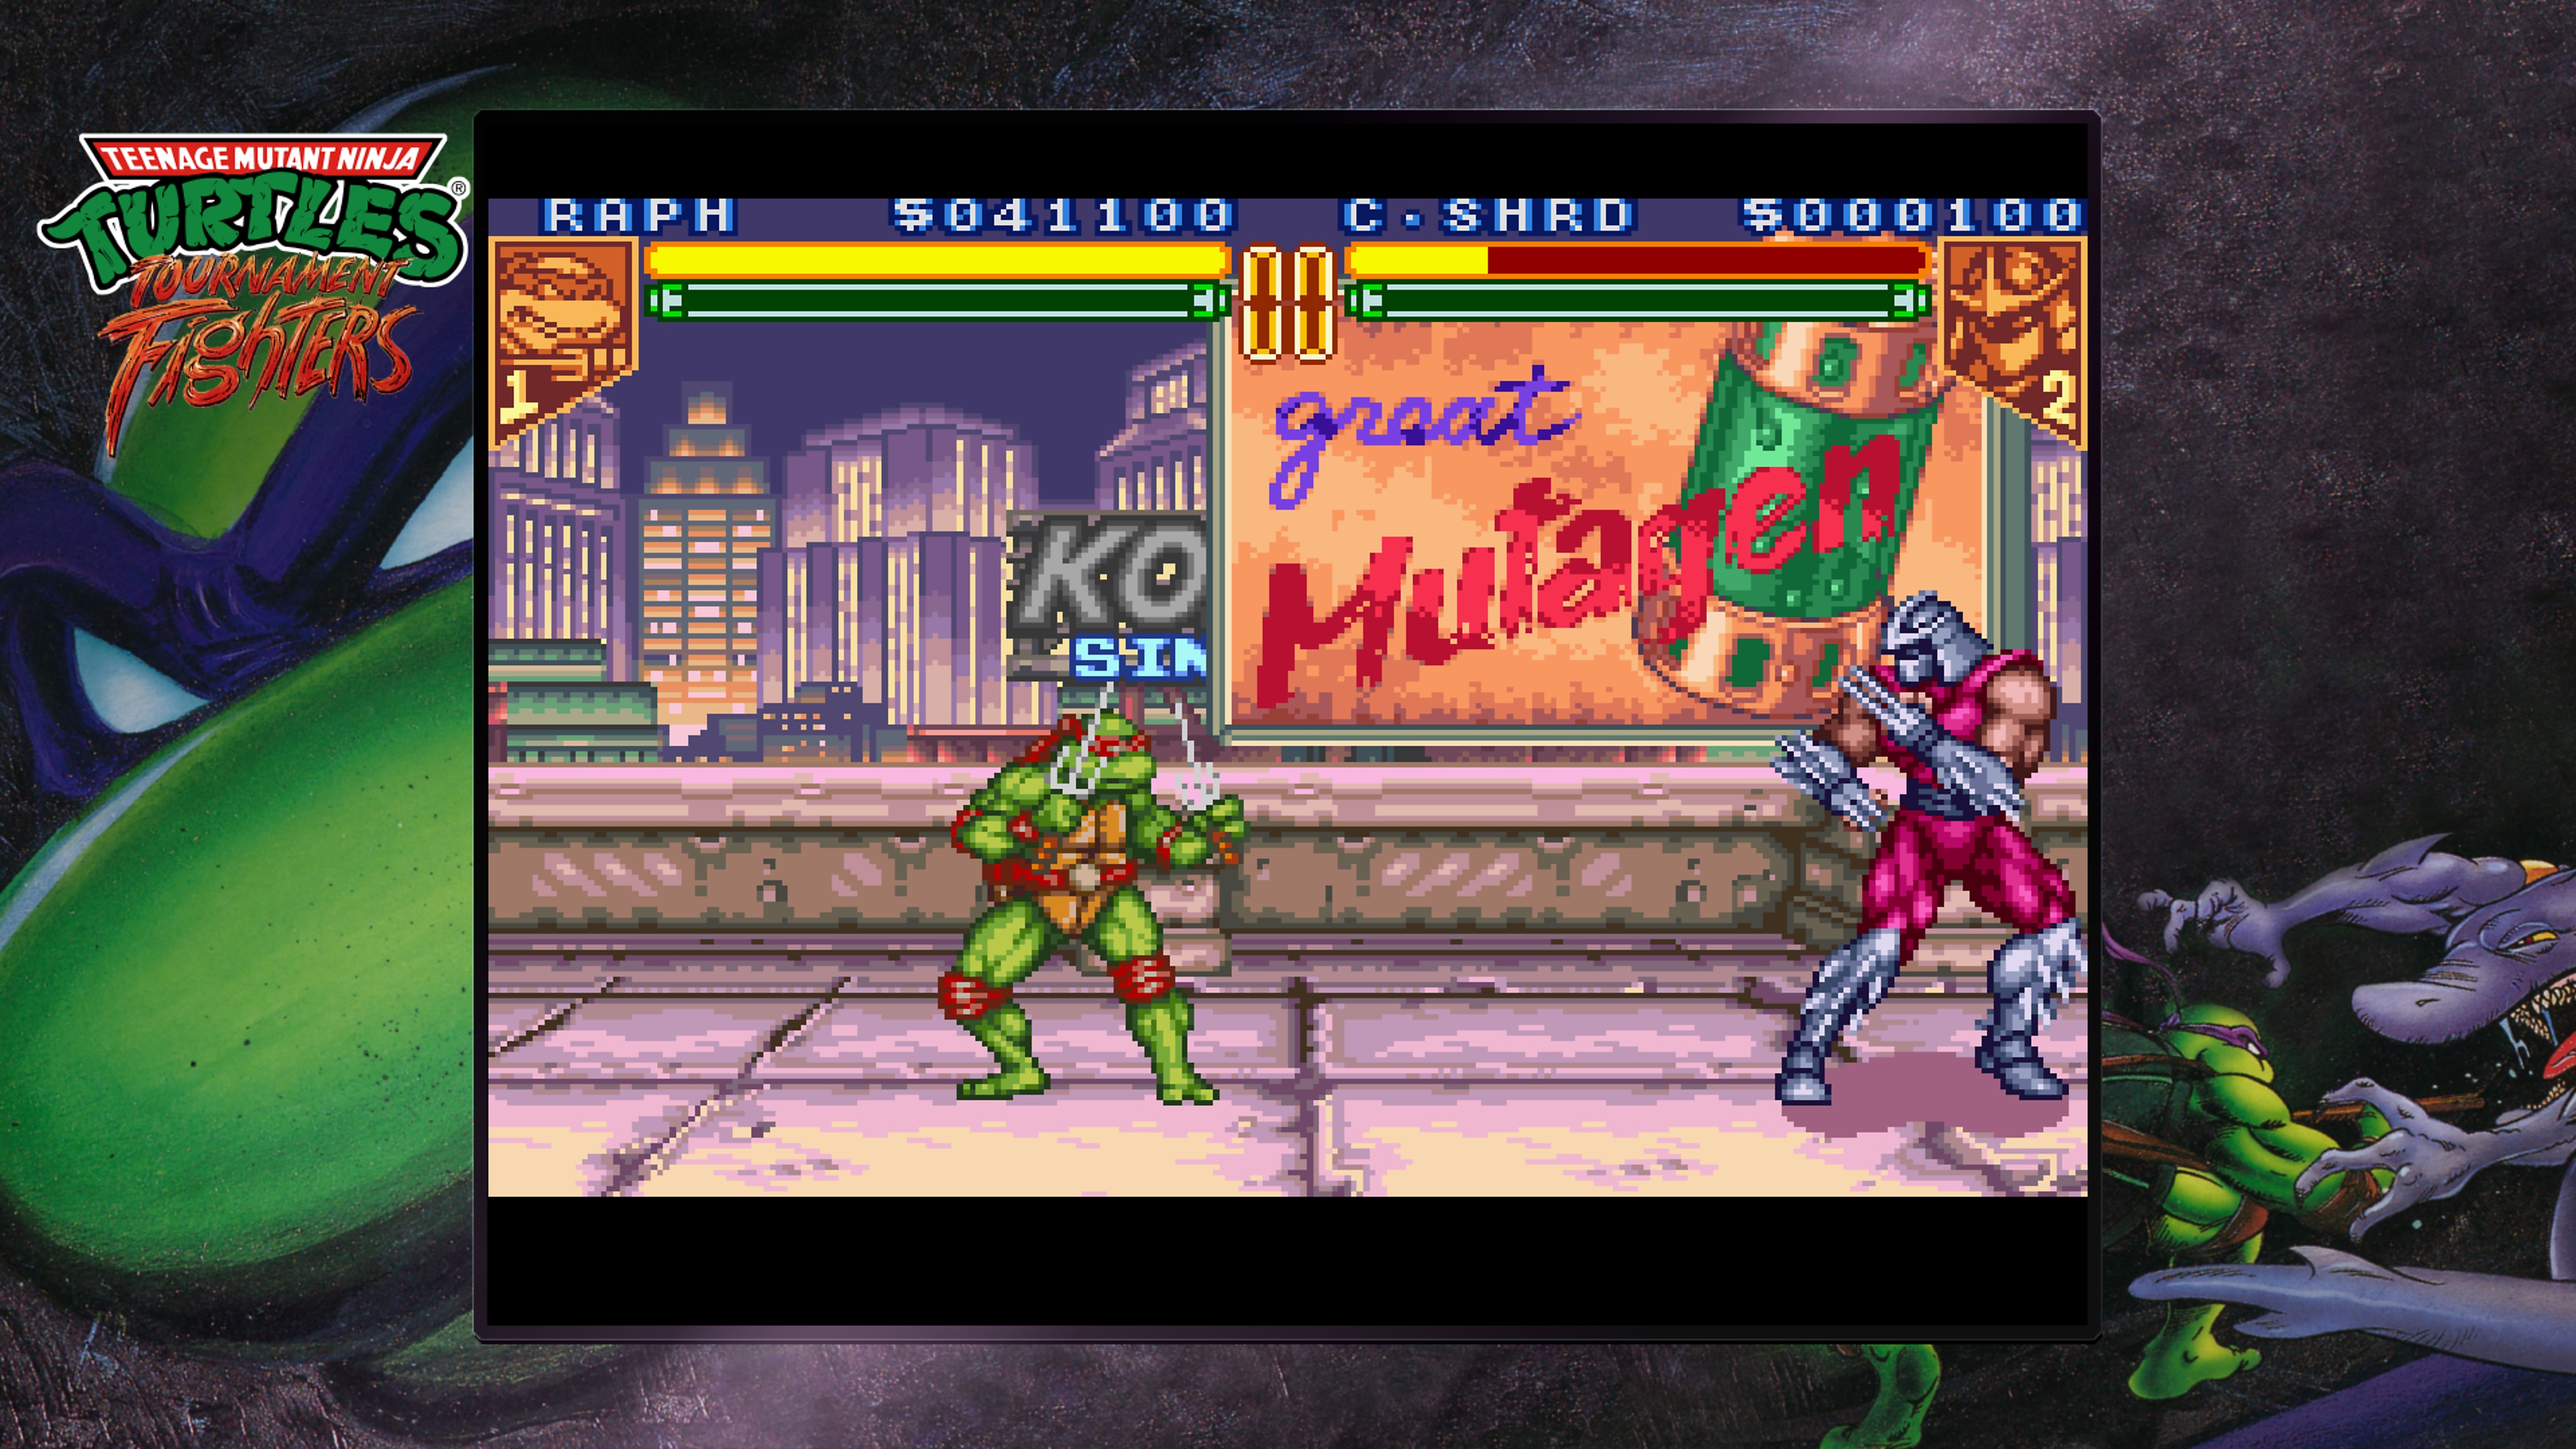 Teenage Mutant Ninja Turtles Collection – Capture d’écran de Tournament Fighters montrant Raphael combattant Shredder sur un toit